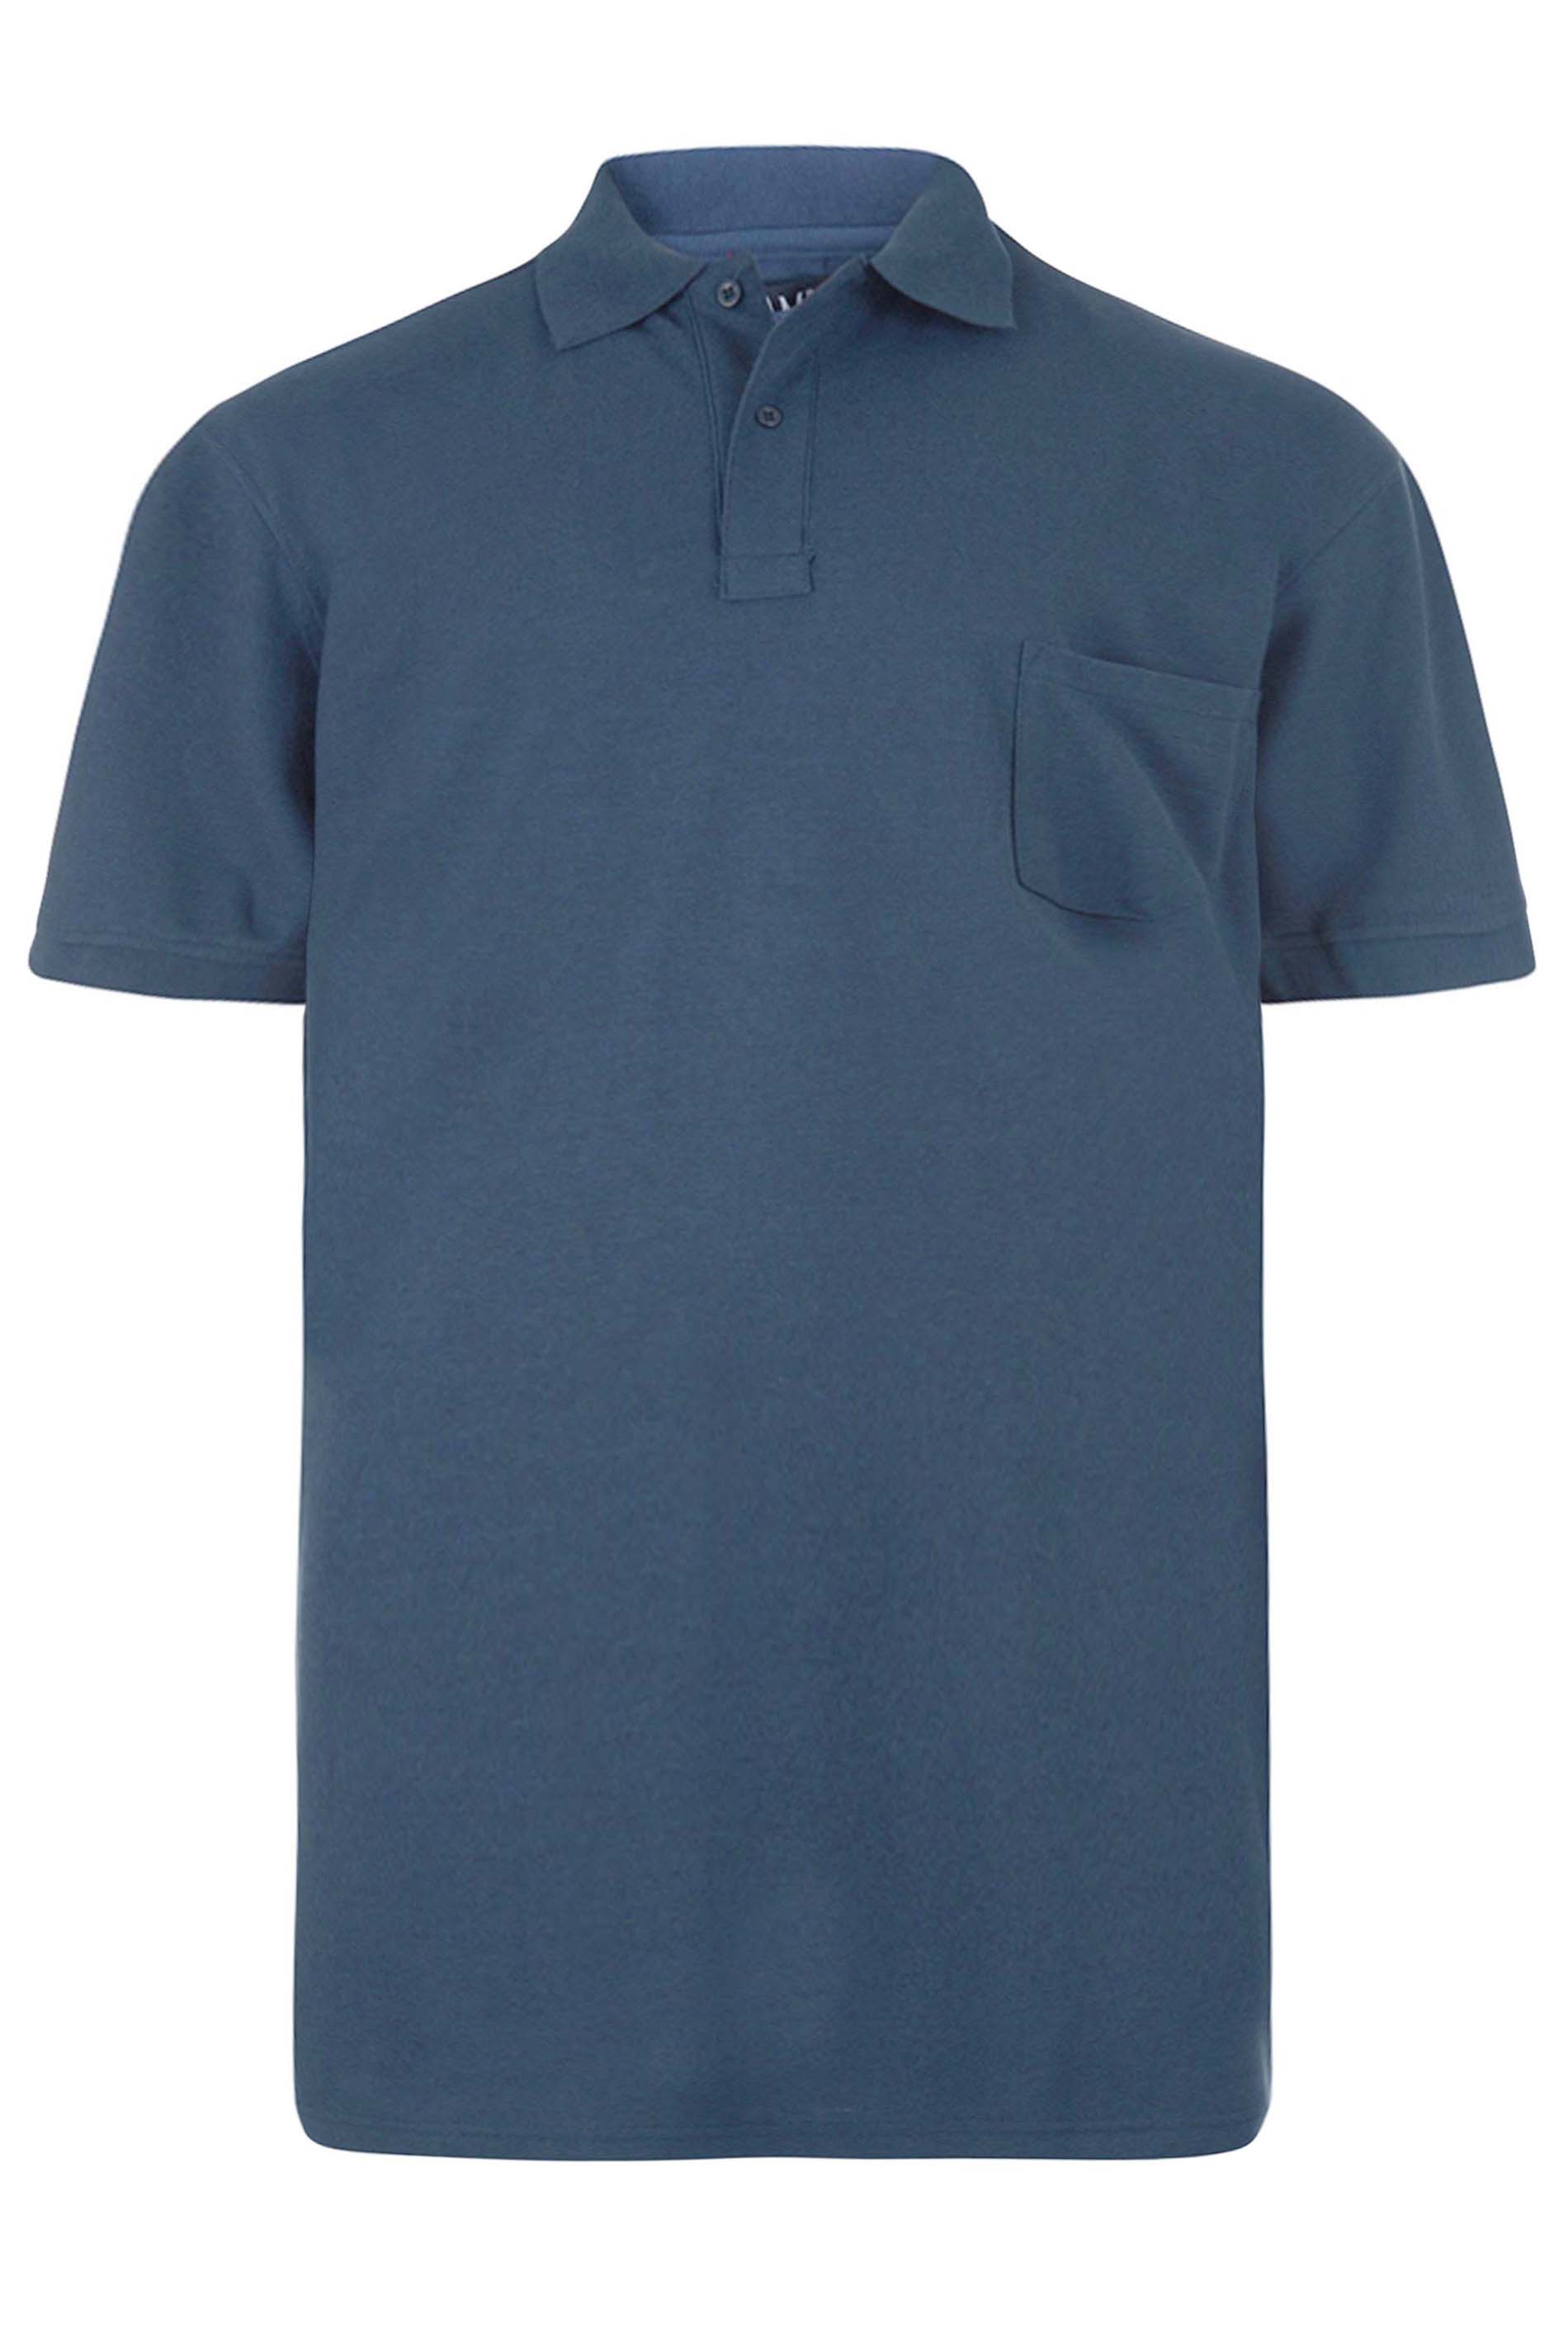 KAM Big & Tall Navy Blue Polo Shirt | BadRhino 2